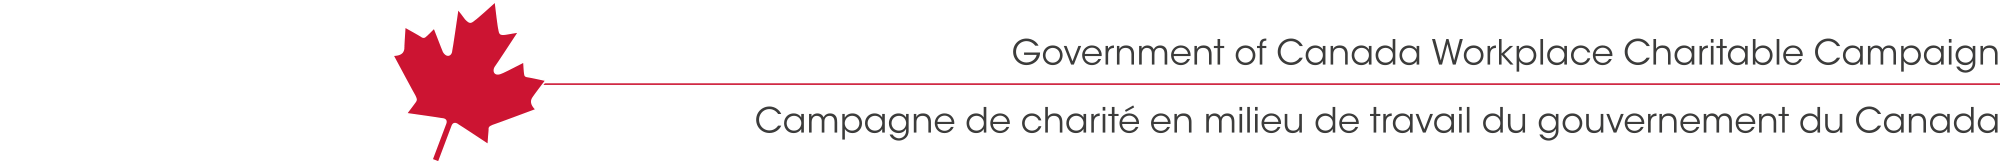 gov_workplace_campaign_logo_2000w